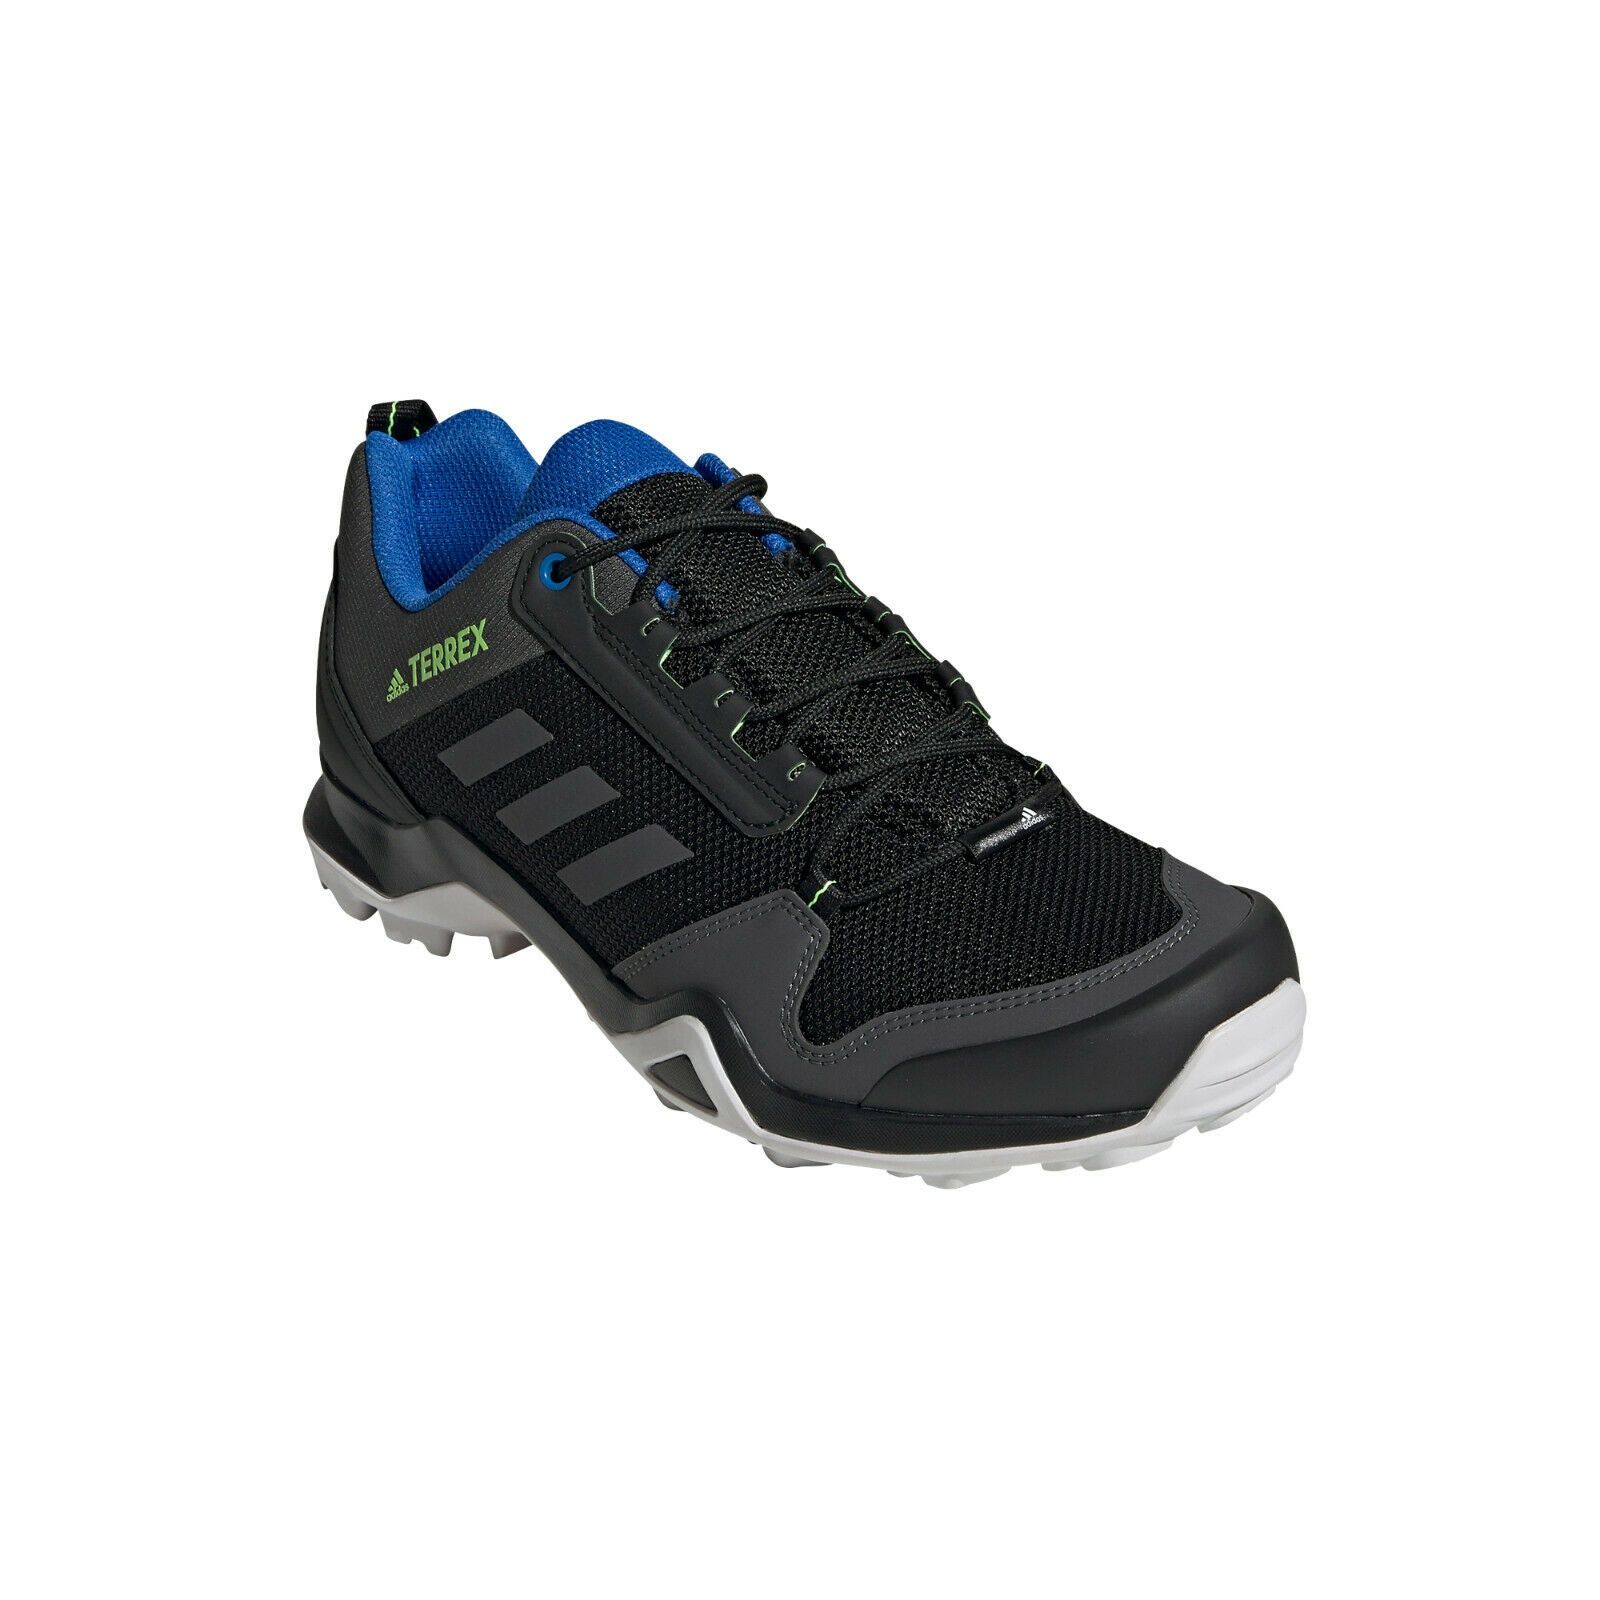 Adidas Terrex AX3, оригинал, кроссовки мужские.